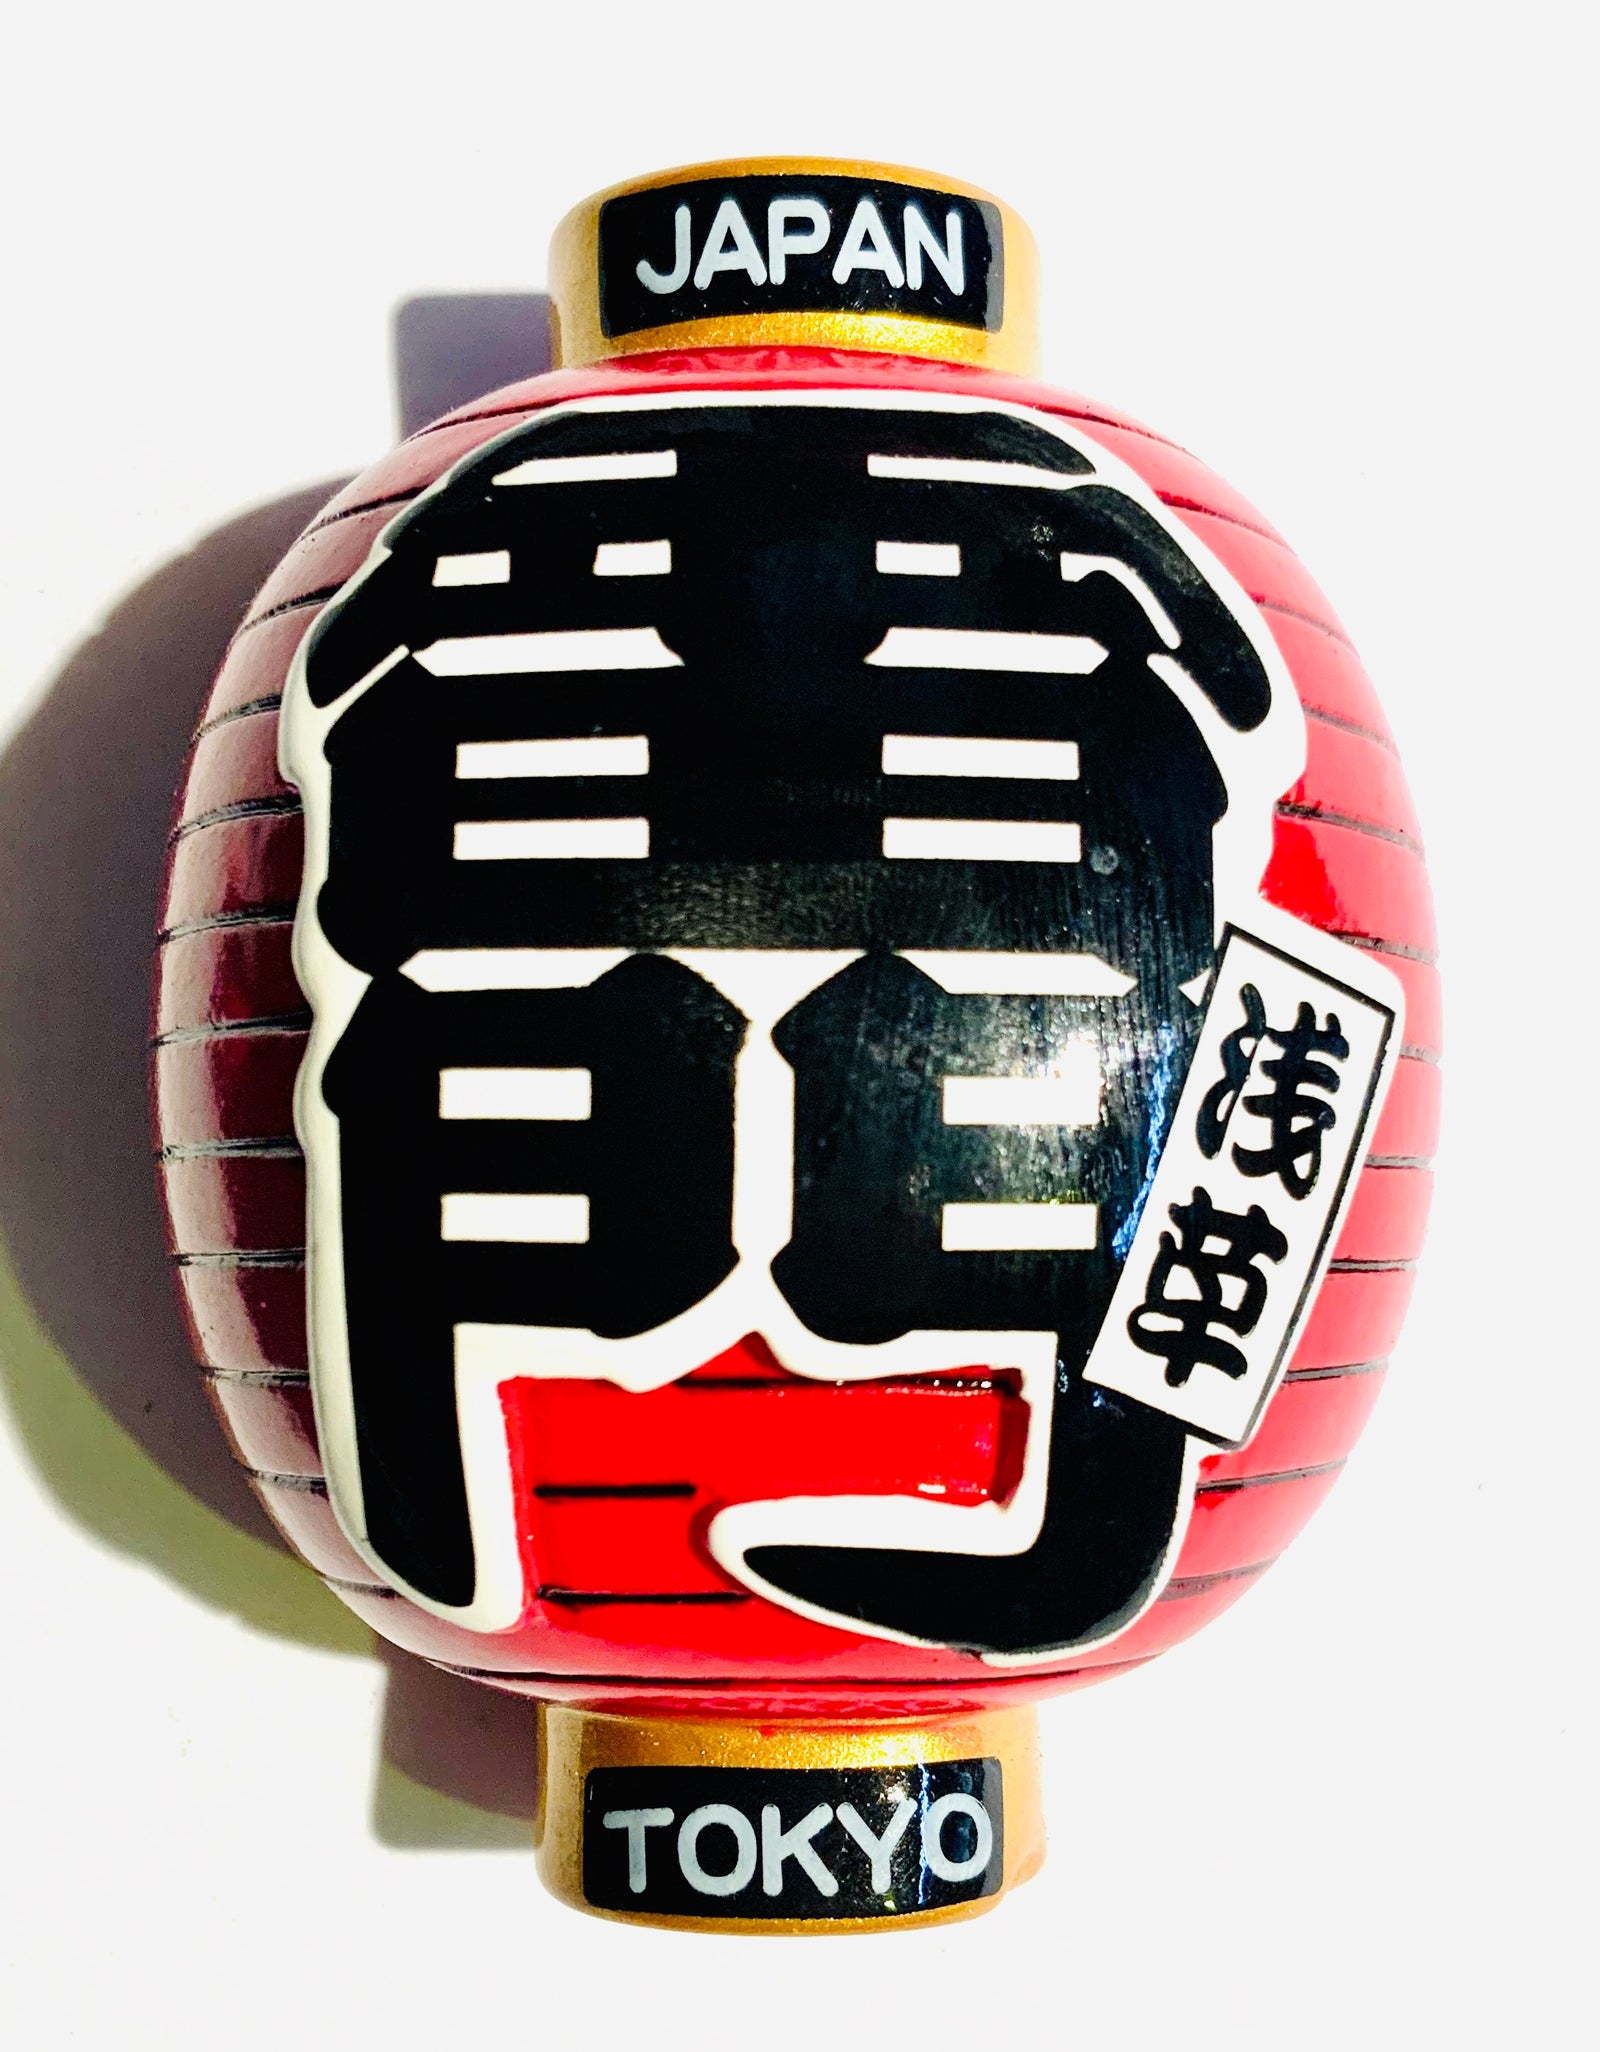 提灯 マグネット 雷門 浅草 東京 日本 JAPAN TOKYO JAPAN Magnet 外国人 お土産 スーベニア souvenir ホームステイ  | 外国人向けお土産 東京浅草Sparkle – Sparkle Tokyo